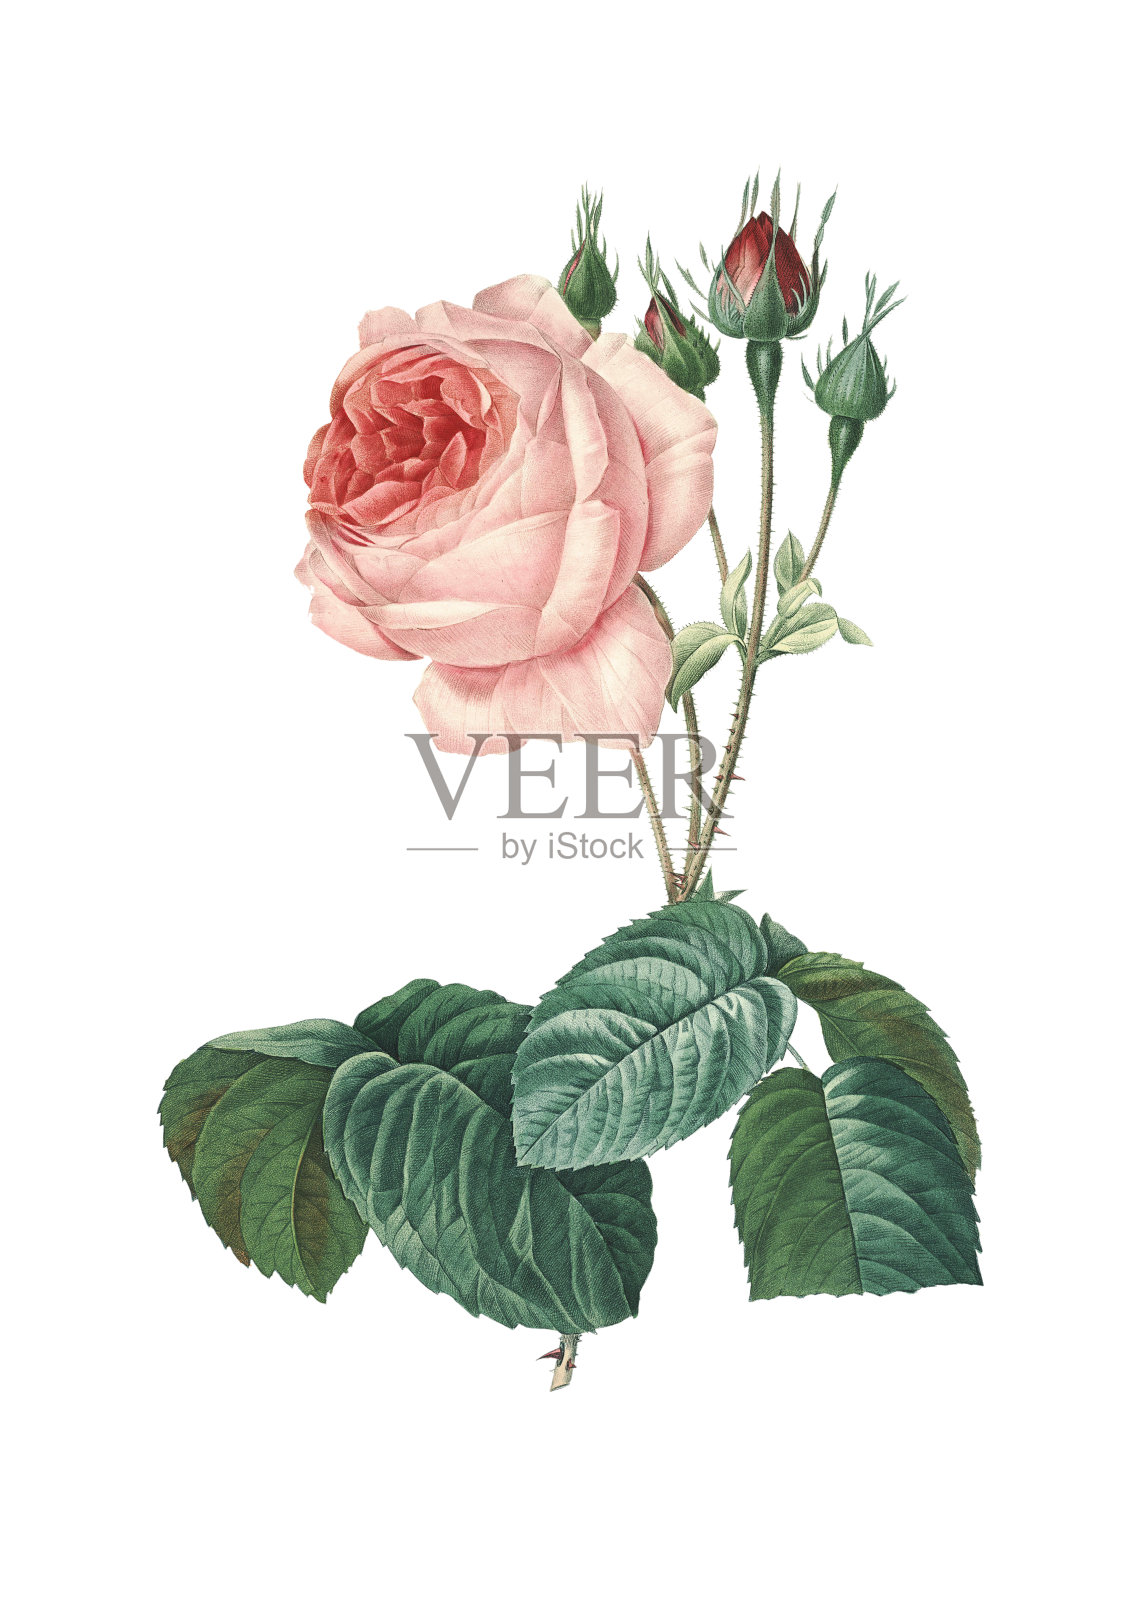 玫瑰蔷薇| 高分辨率照片| CLIPARTO Redoute 花卉插图插画图片素材